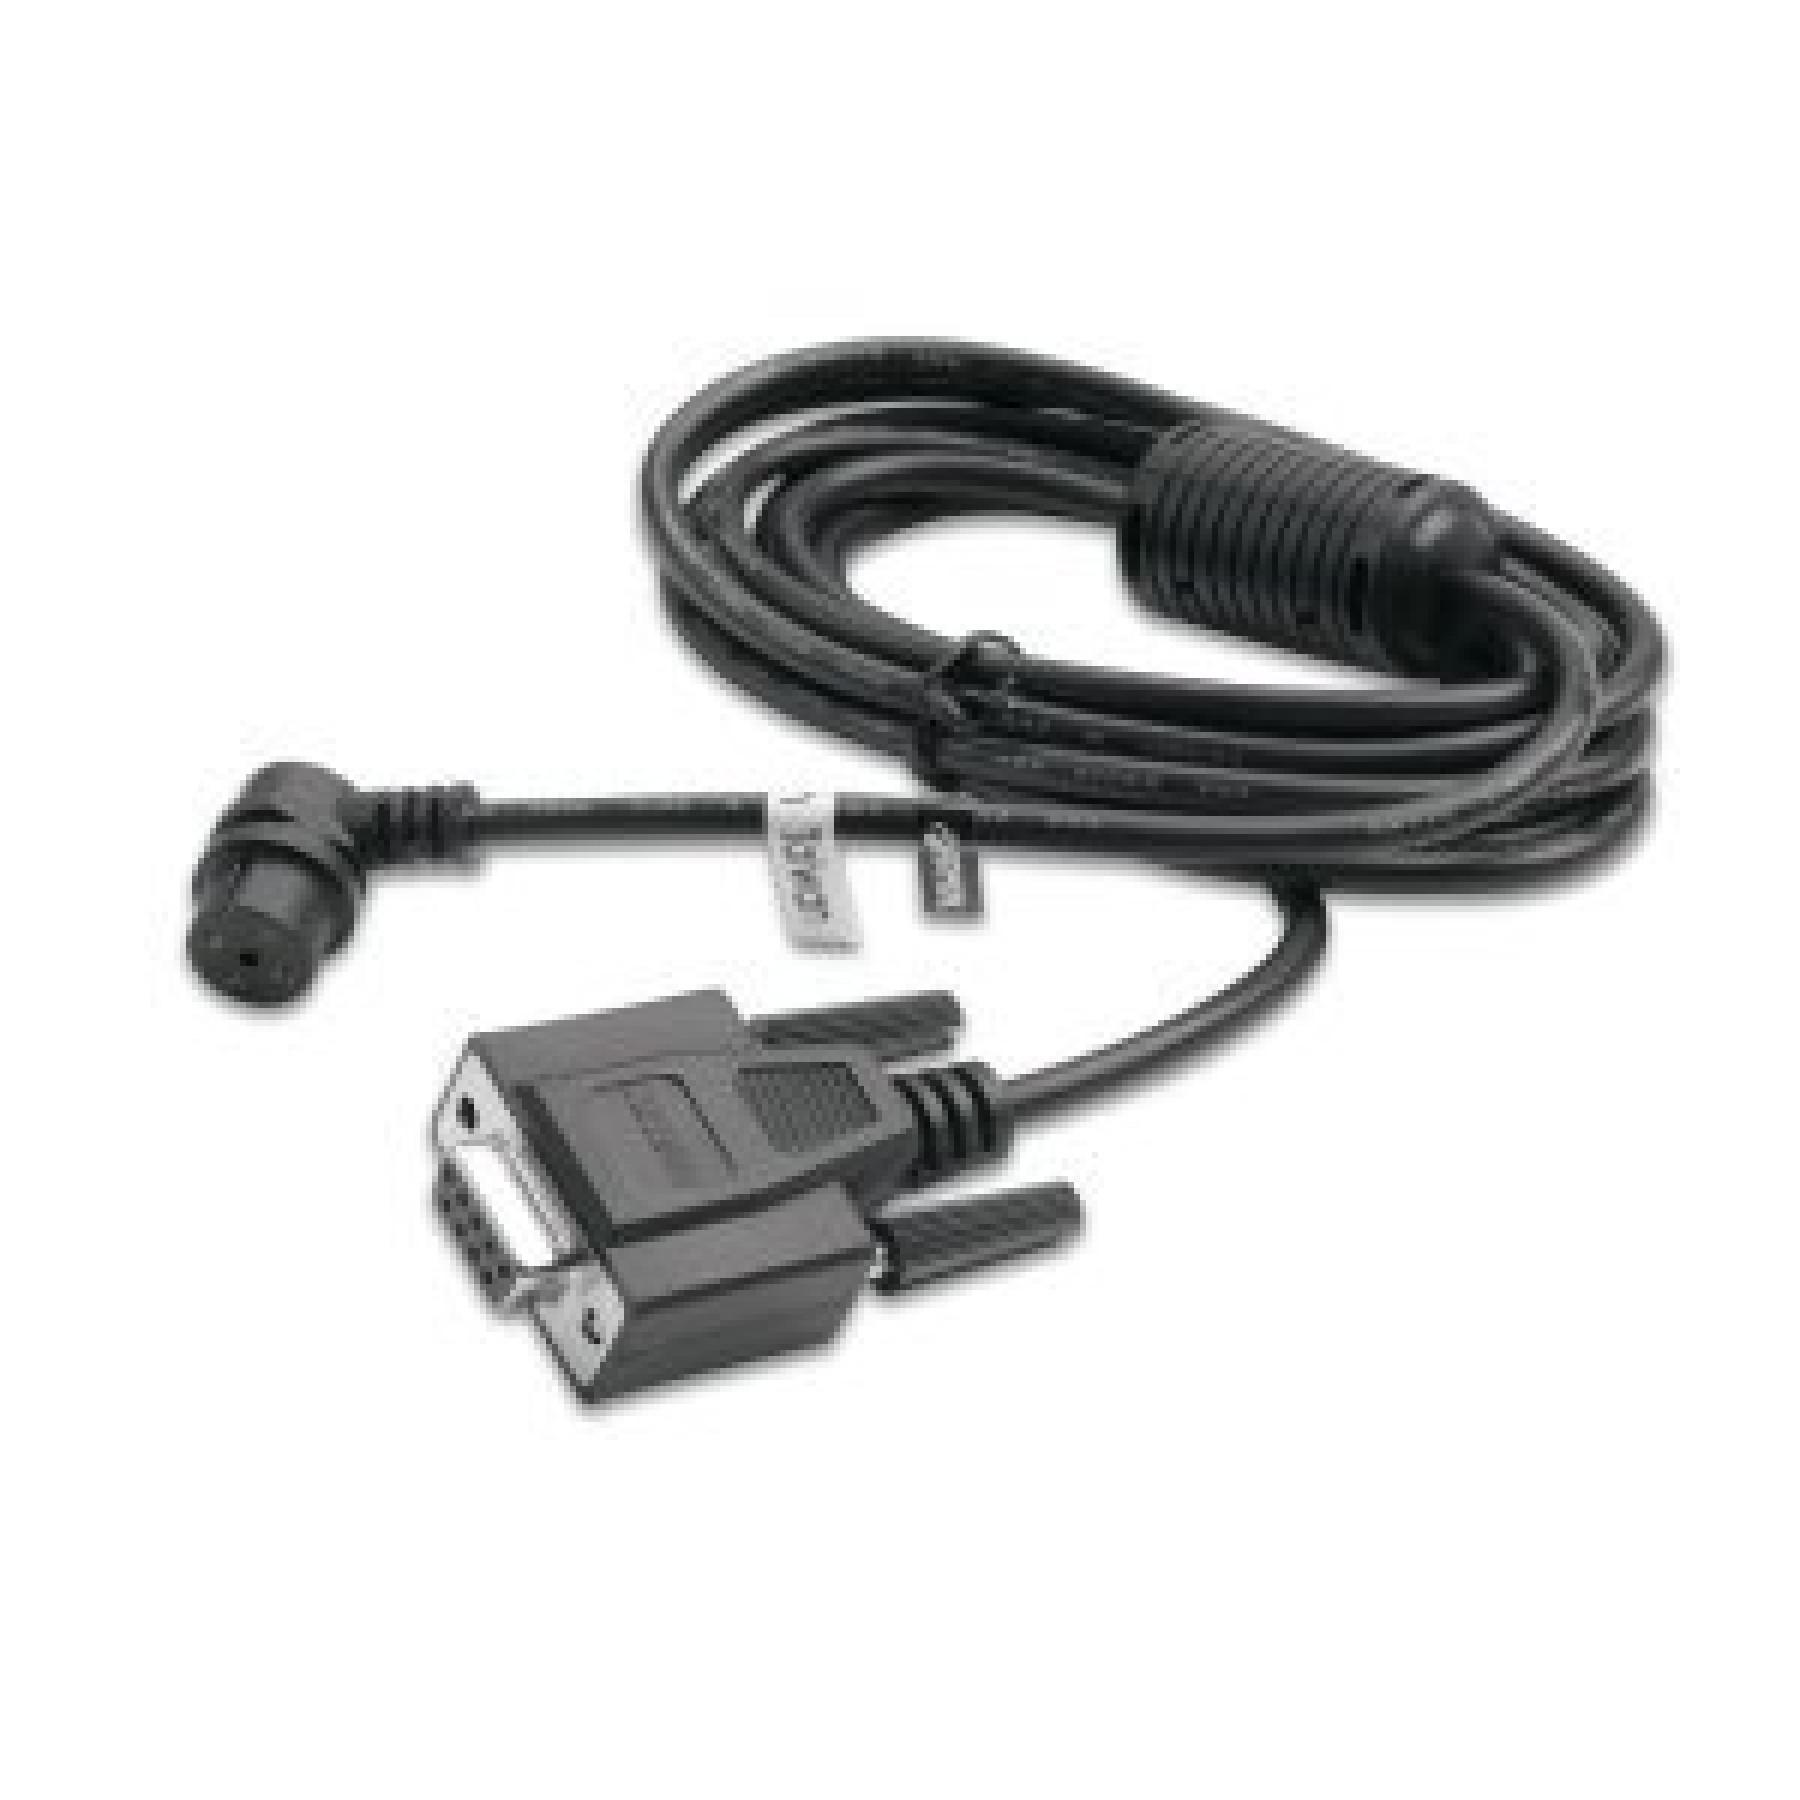 Kabel Garmin interface pc connecteur rs232 pour port série